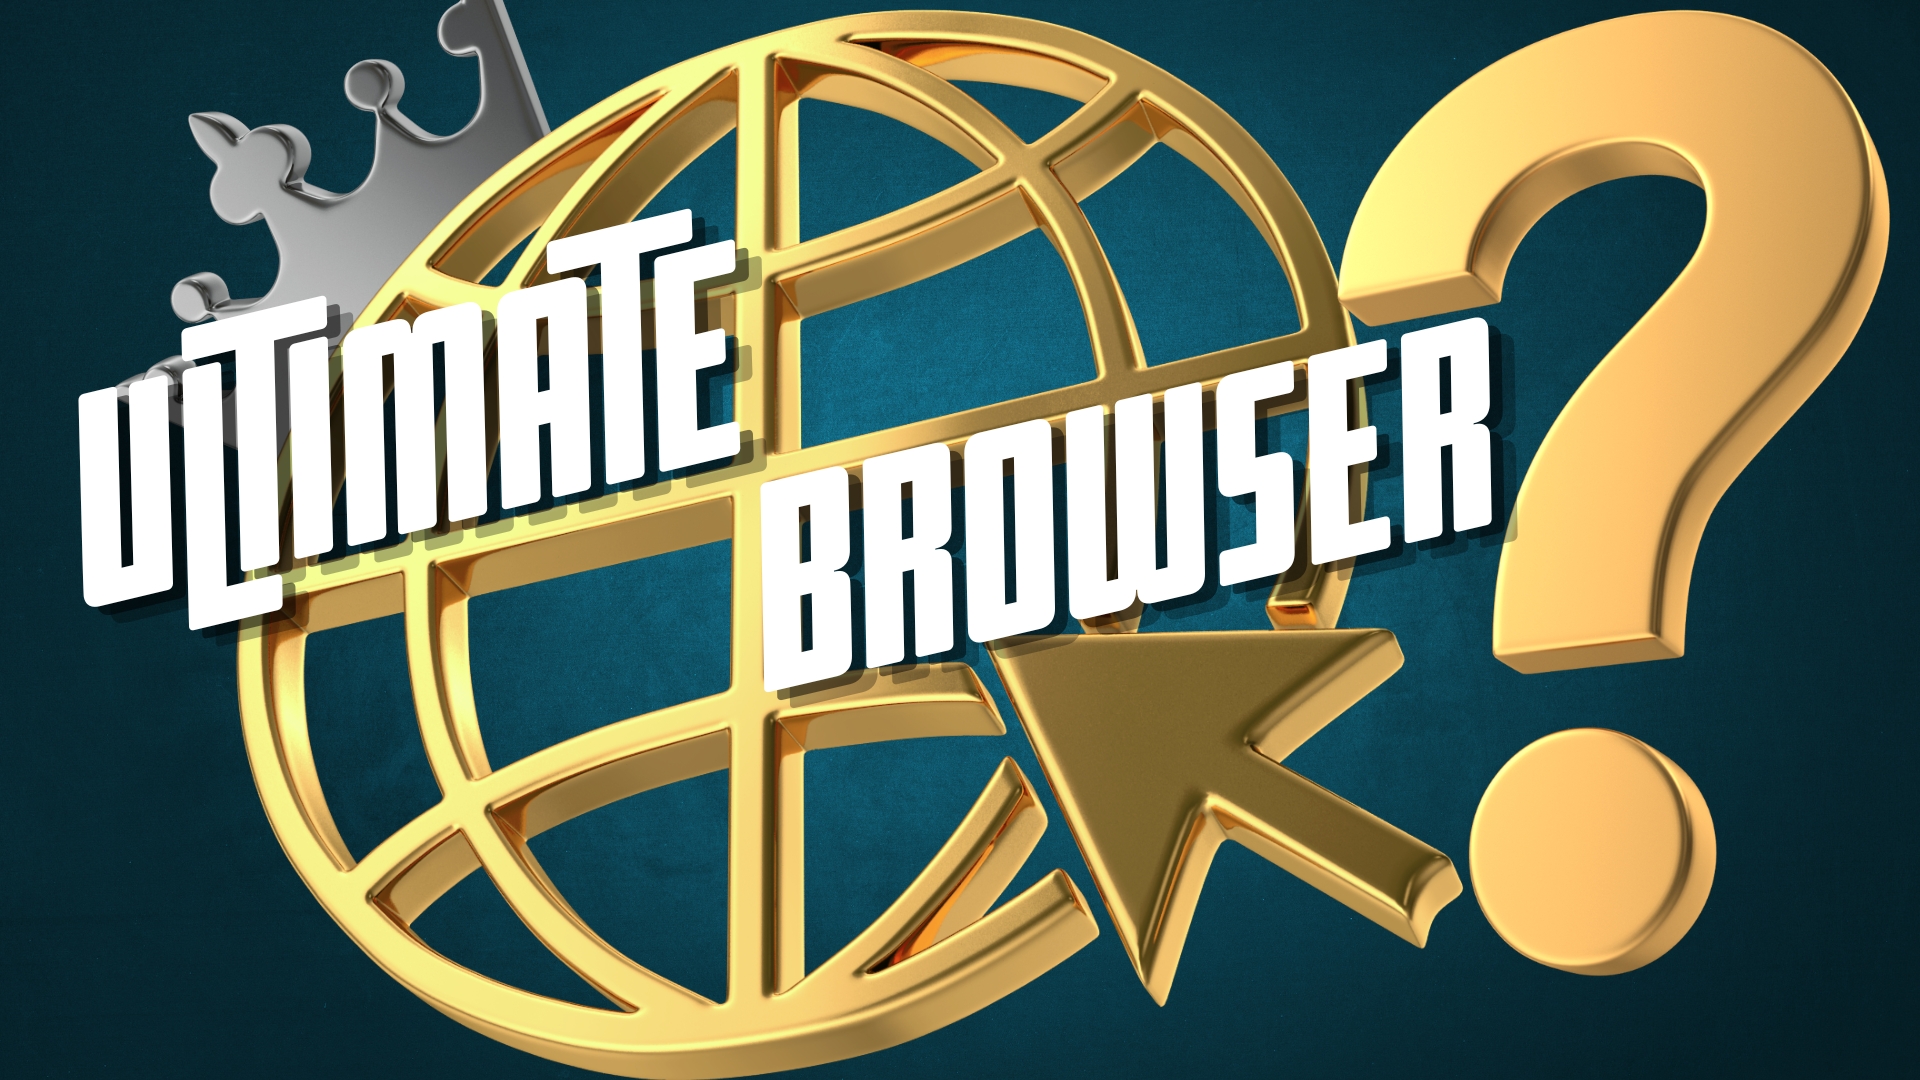 Ultimate Browser blog image 31.07